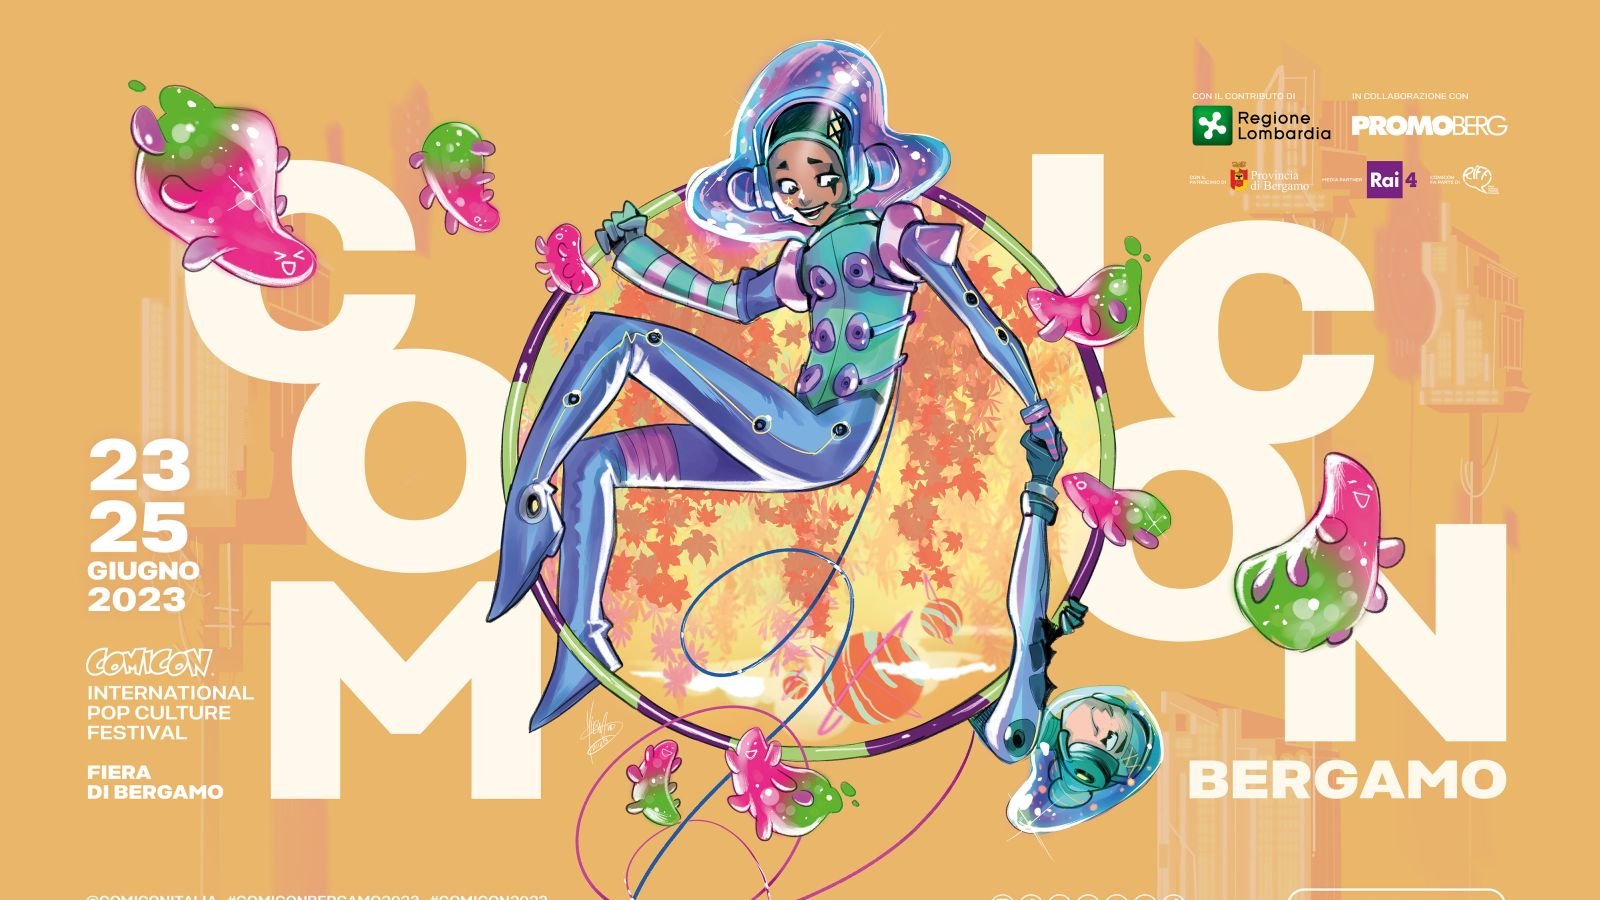 Comicon Bergamo 2023 dal 23 al 25 giugno: il programma completo, come acquistare i biglietti